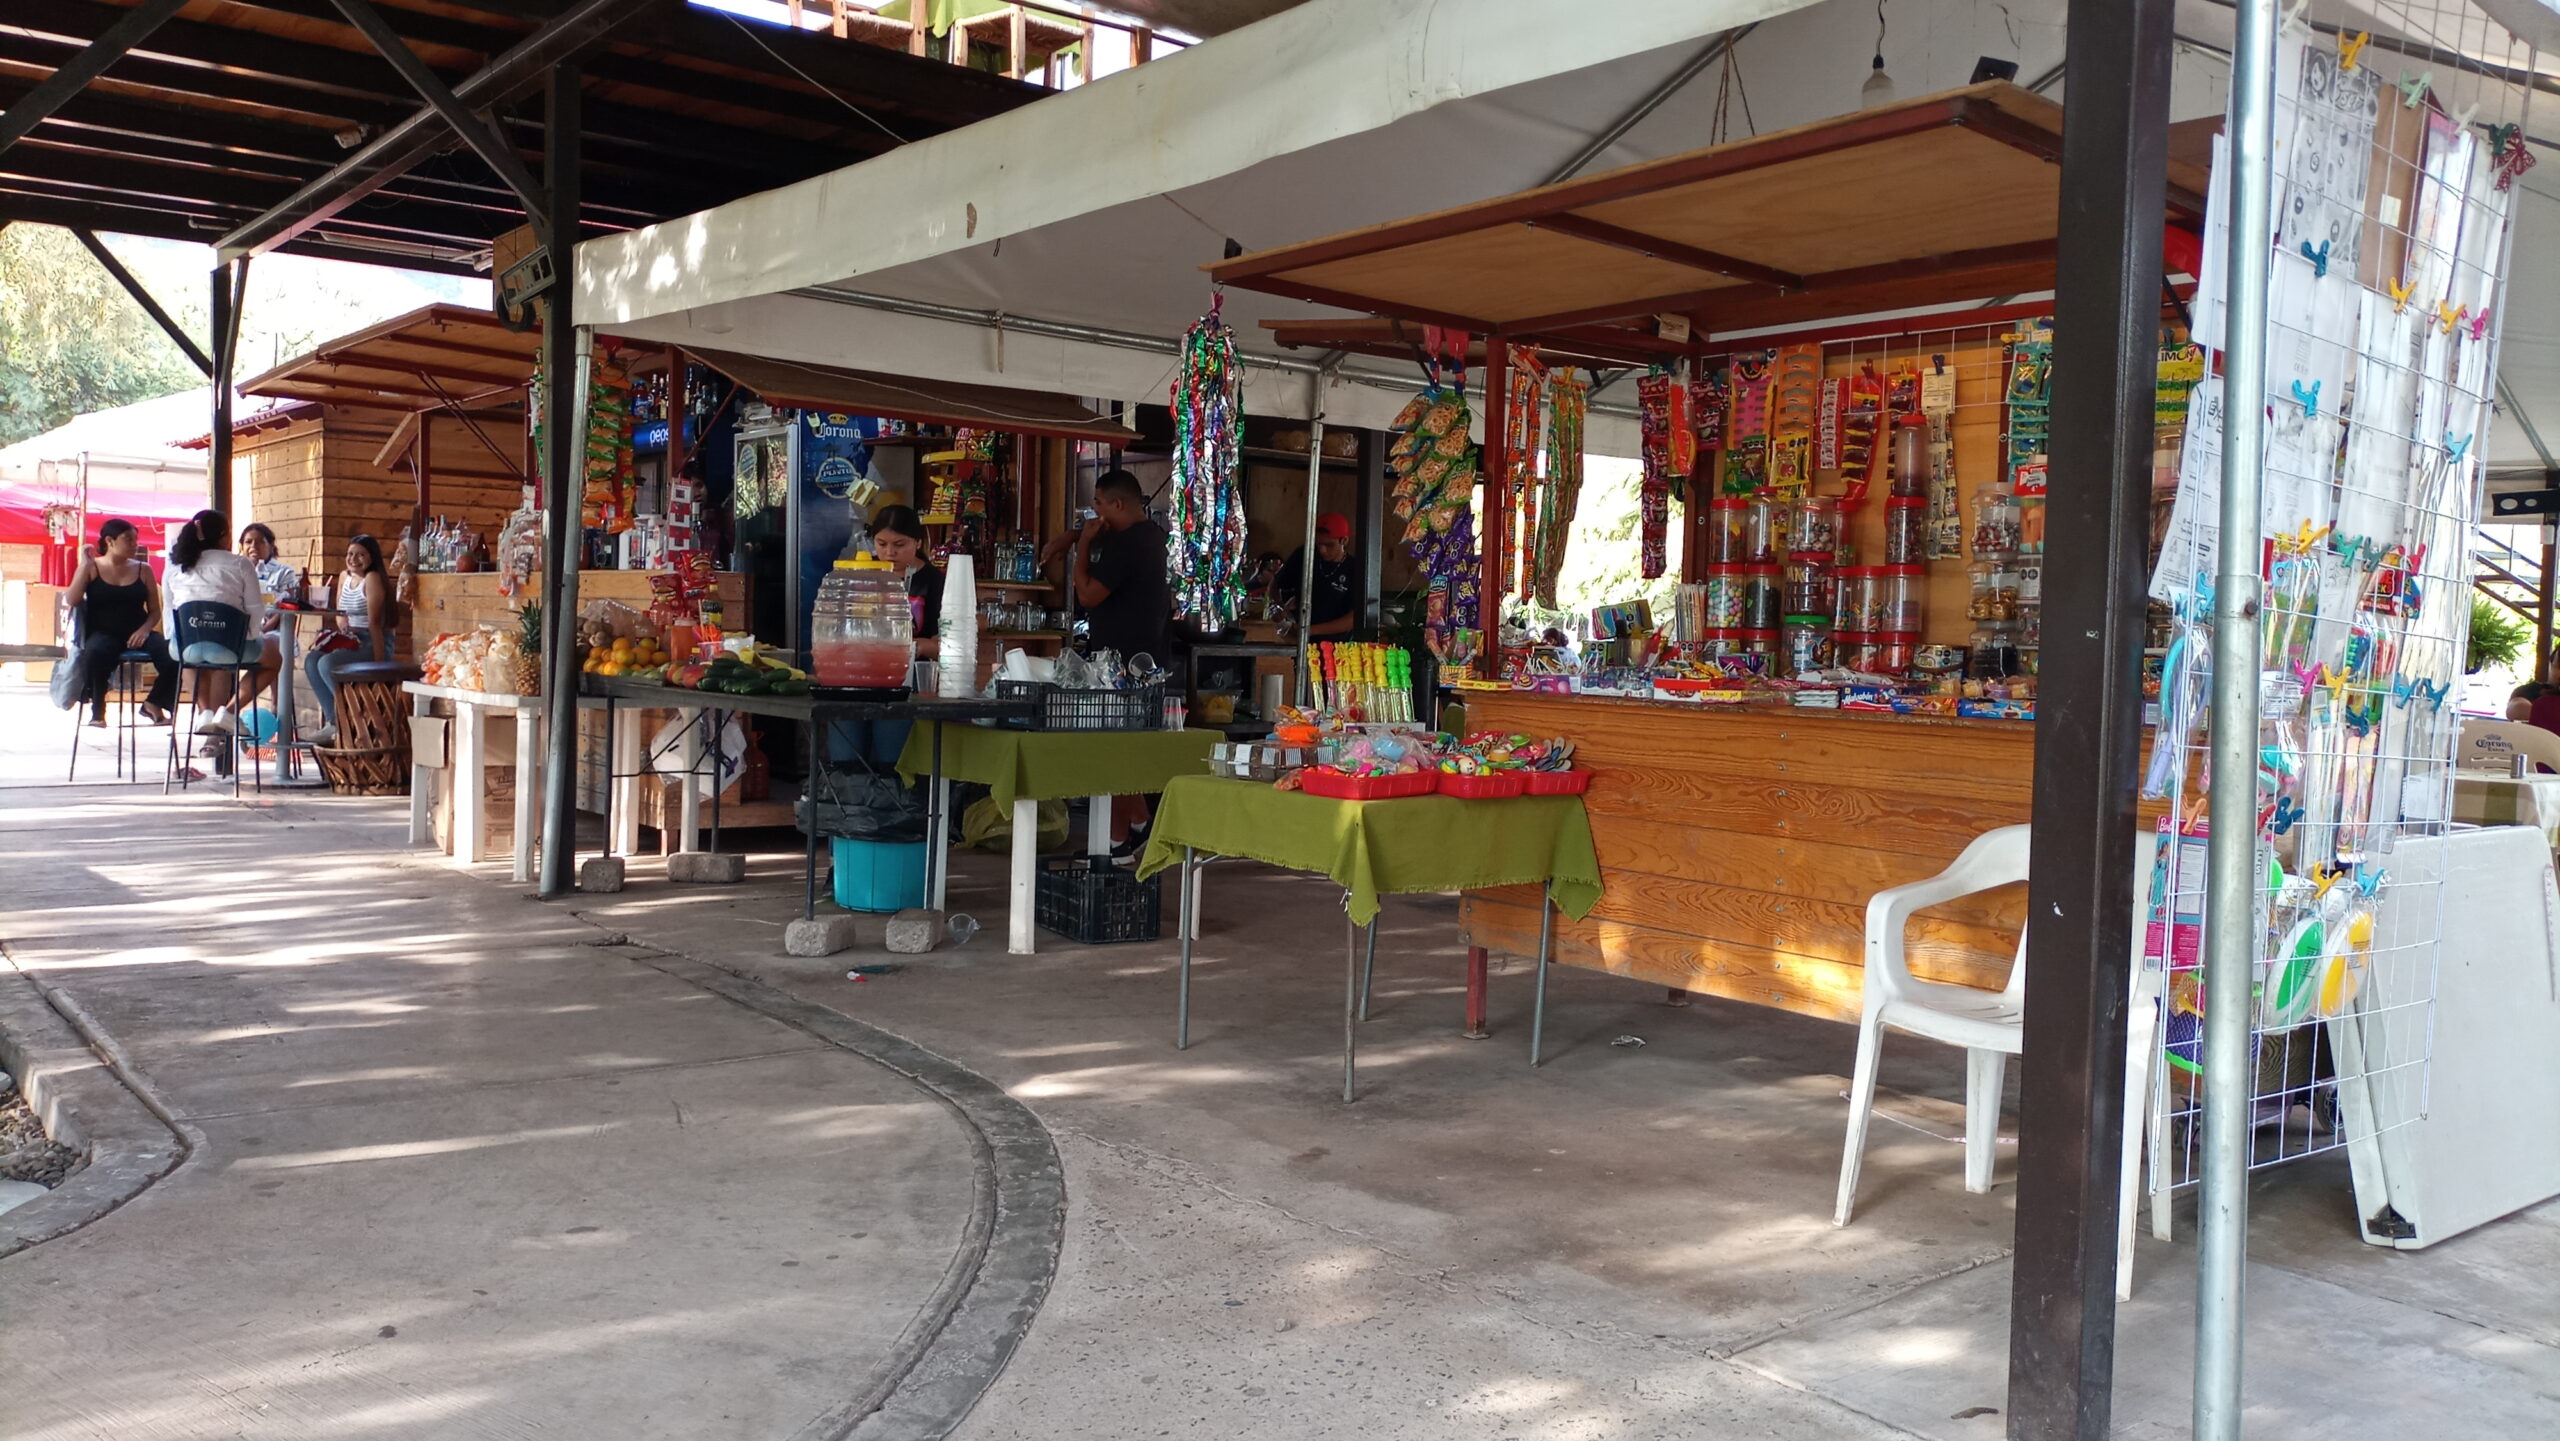 San Juan Cosalá's Malecón merchants hope for an improvement in tourism